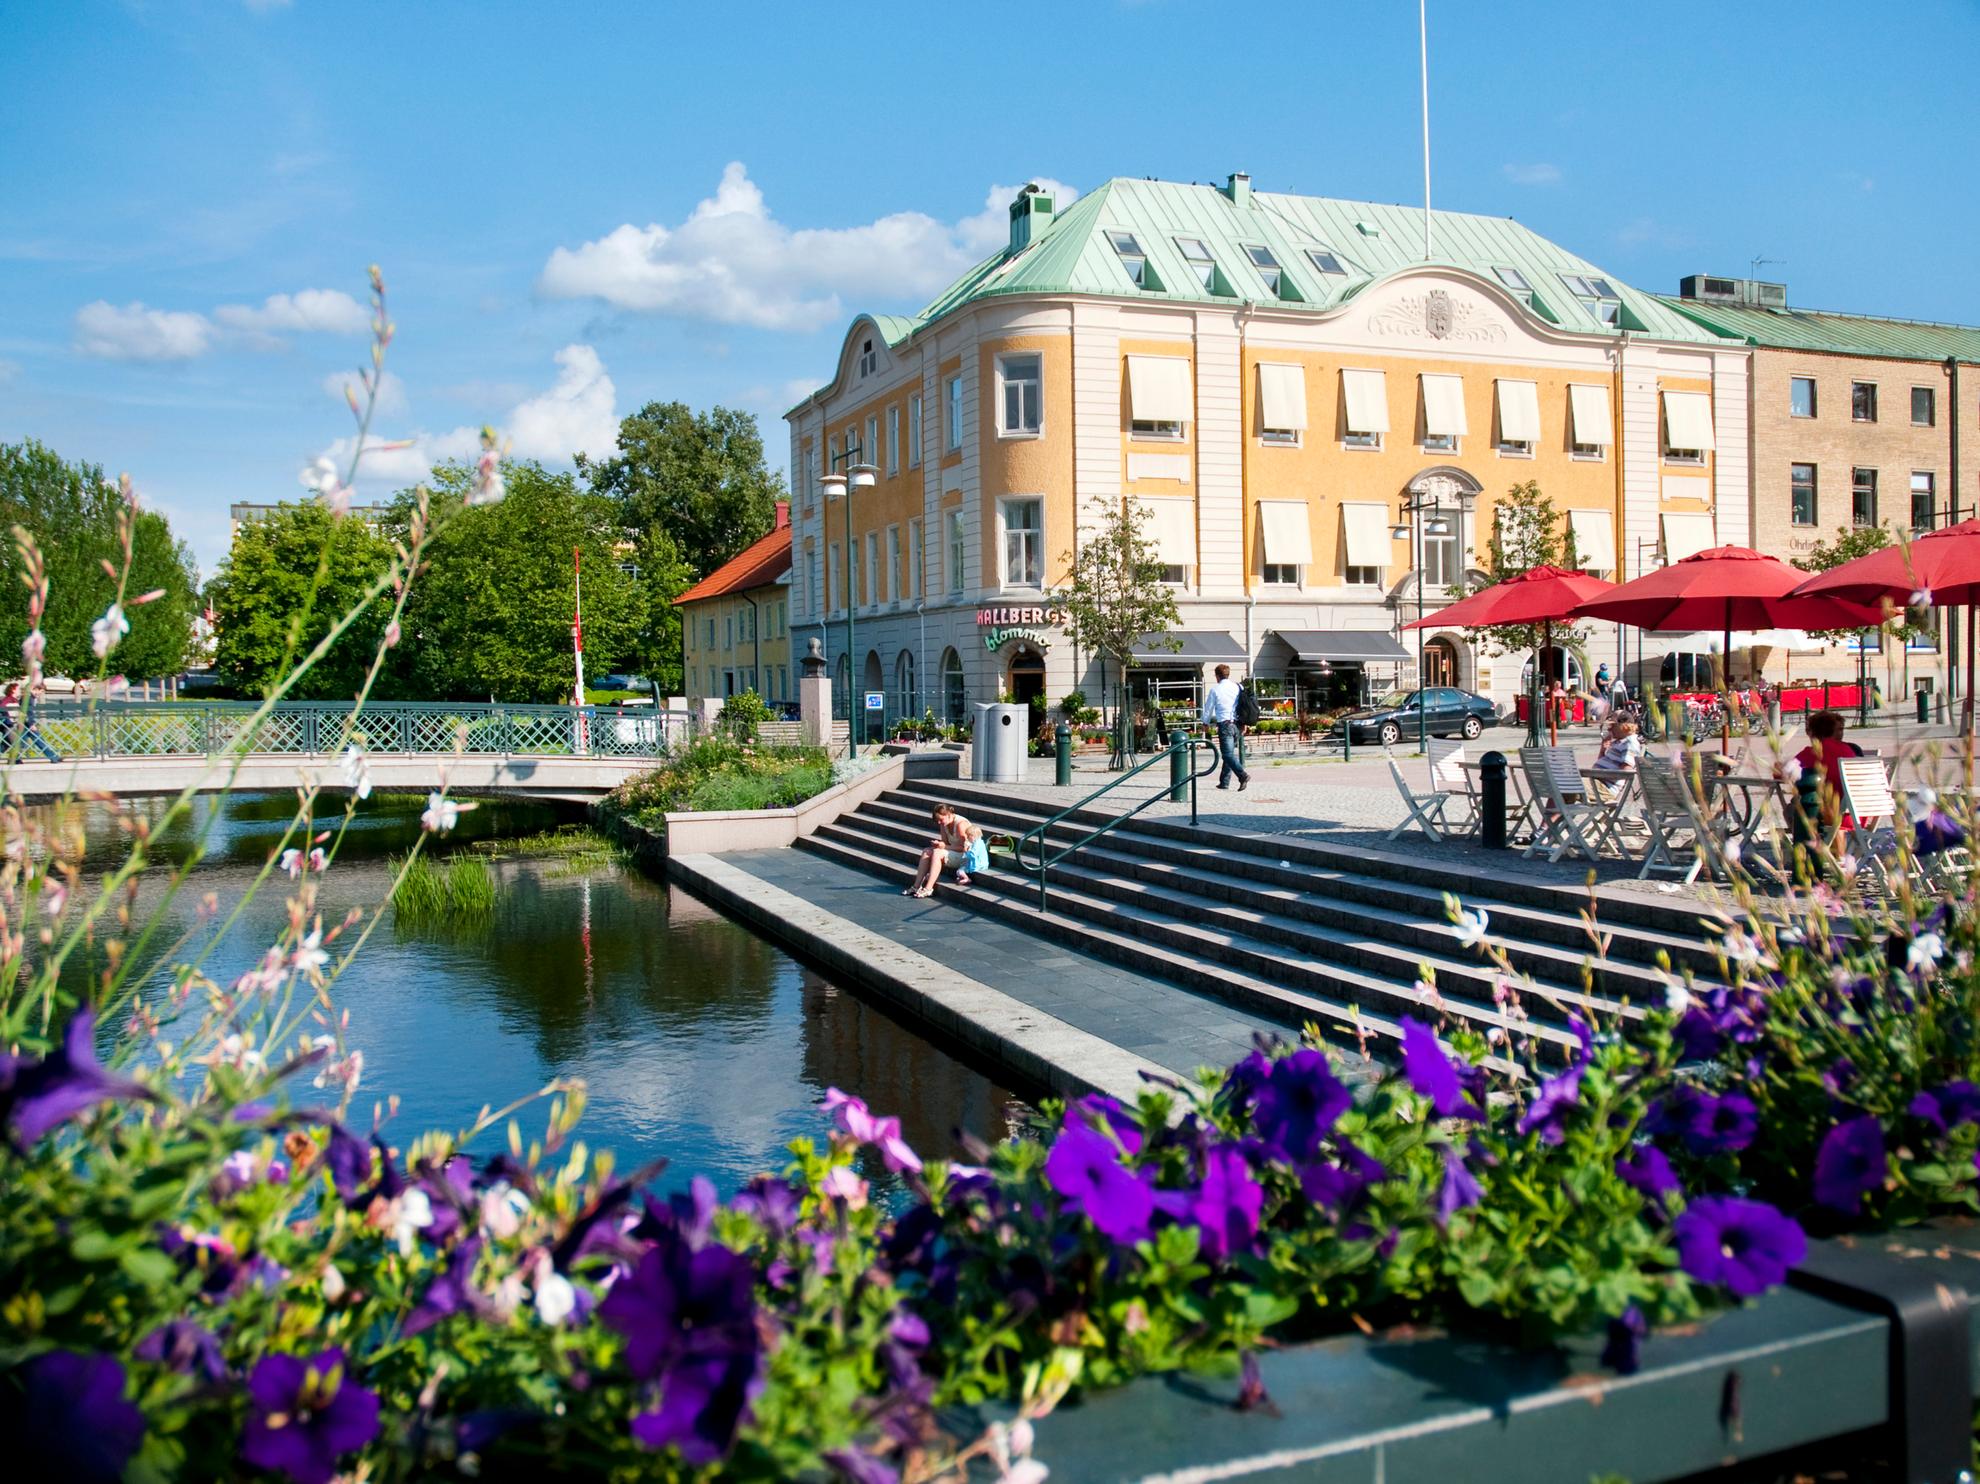 Zonnige dag in Alingsås. Stadscentrum met trappen en een brug over Lillån. Paarse bloemen op de voorgrond.